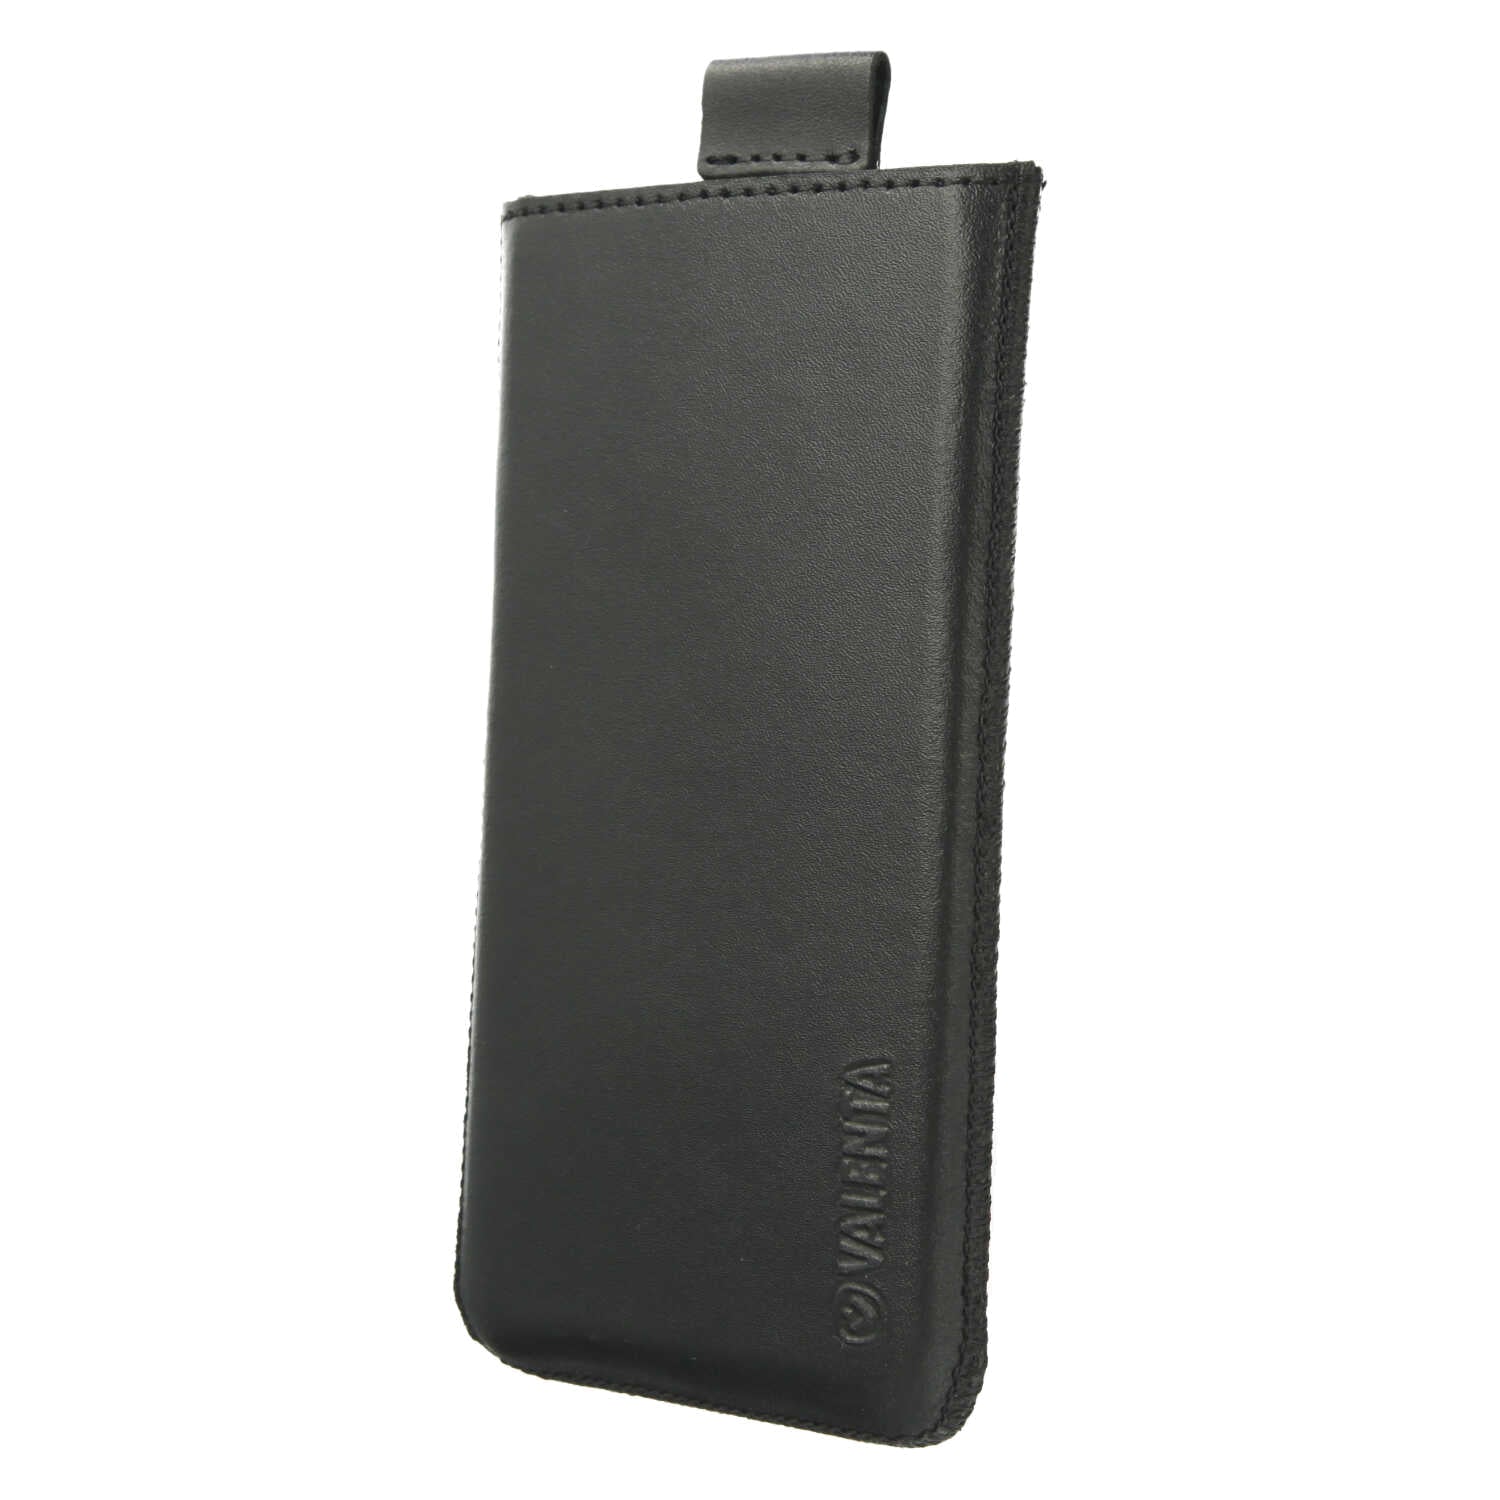 Pocket Classic Black iPhone 12 - 13 mini - H130 x B64 x D8